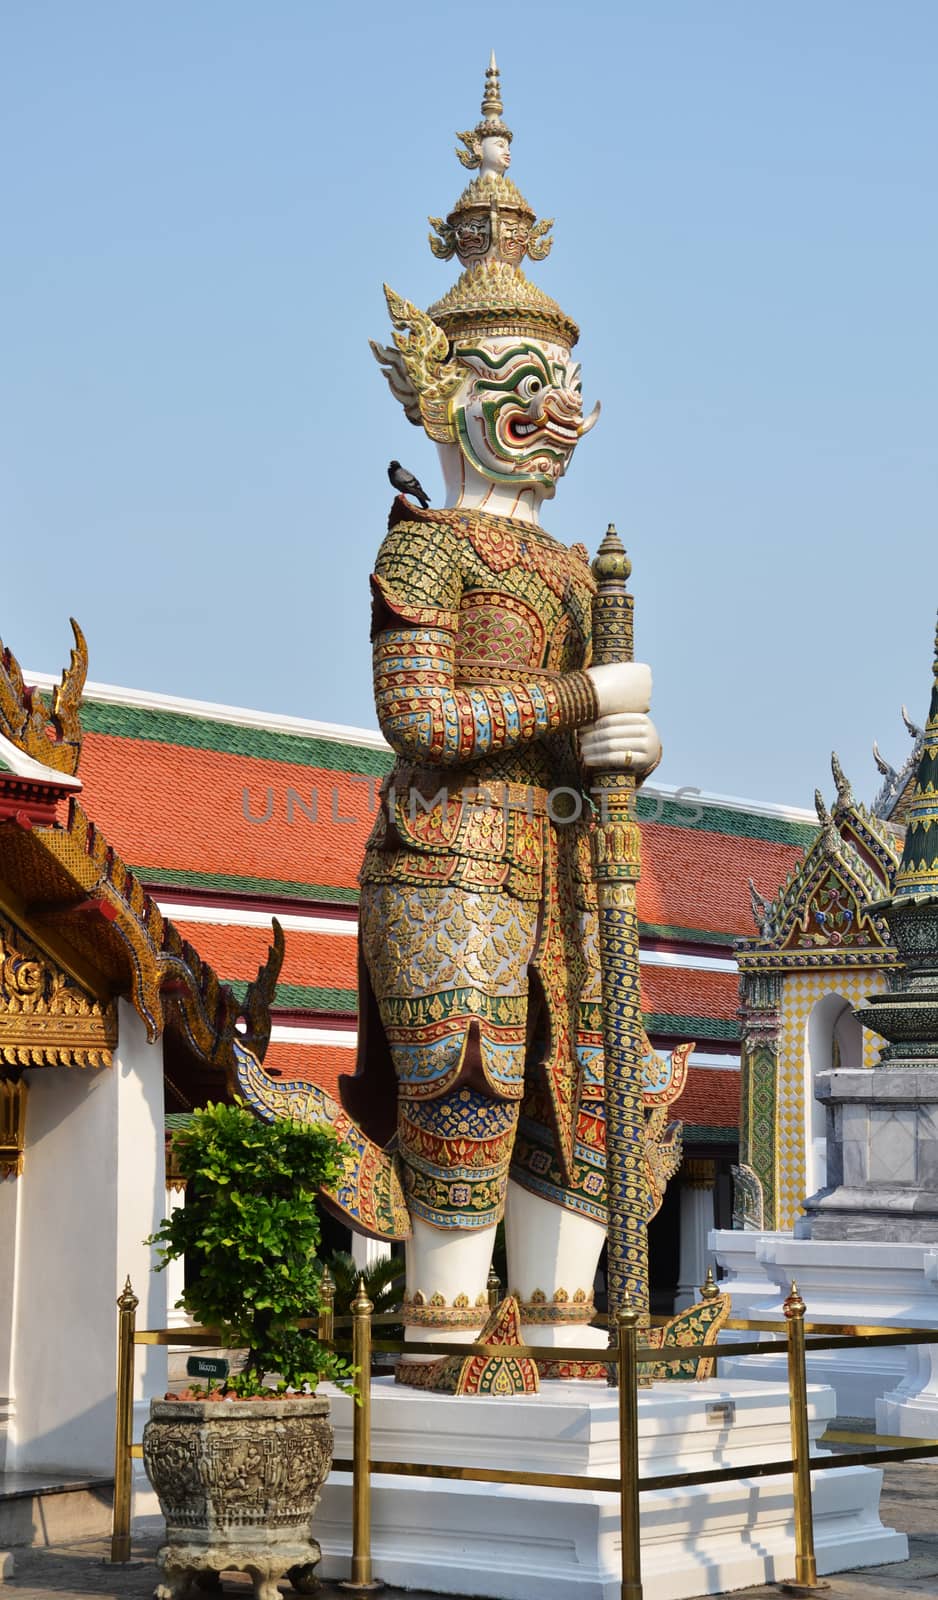 Royal Palace complex in Bangkok, Thailand by tang90246